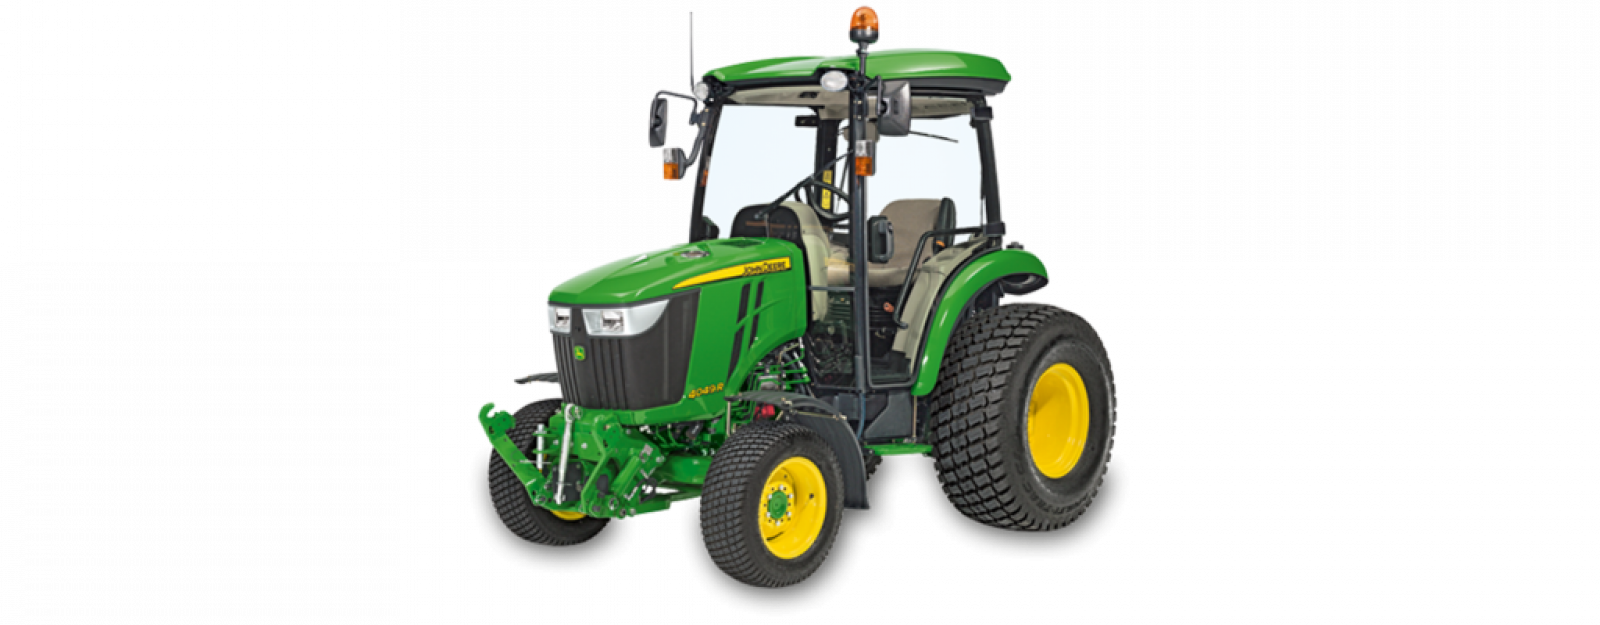 John Deere 4049R Compact Tractor